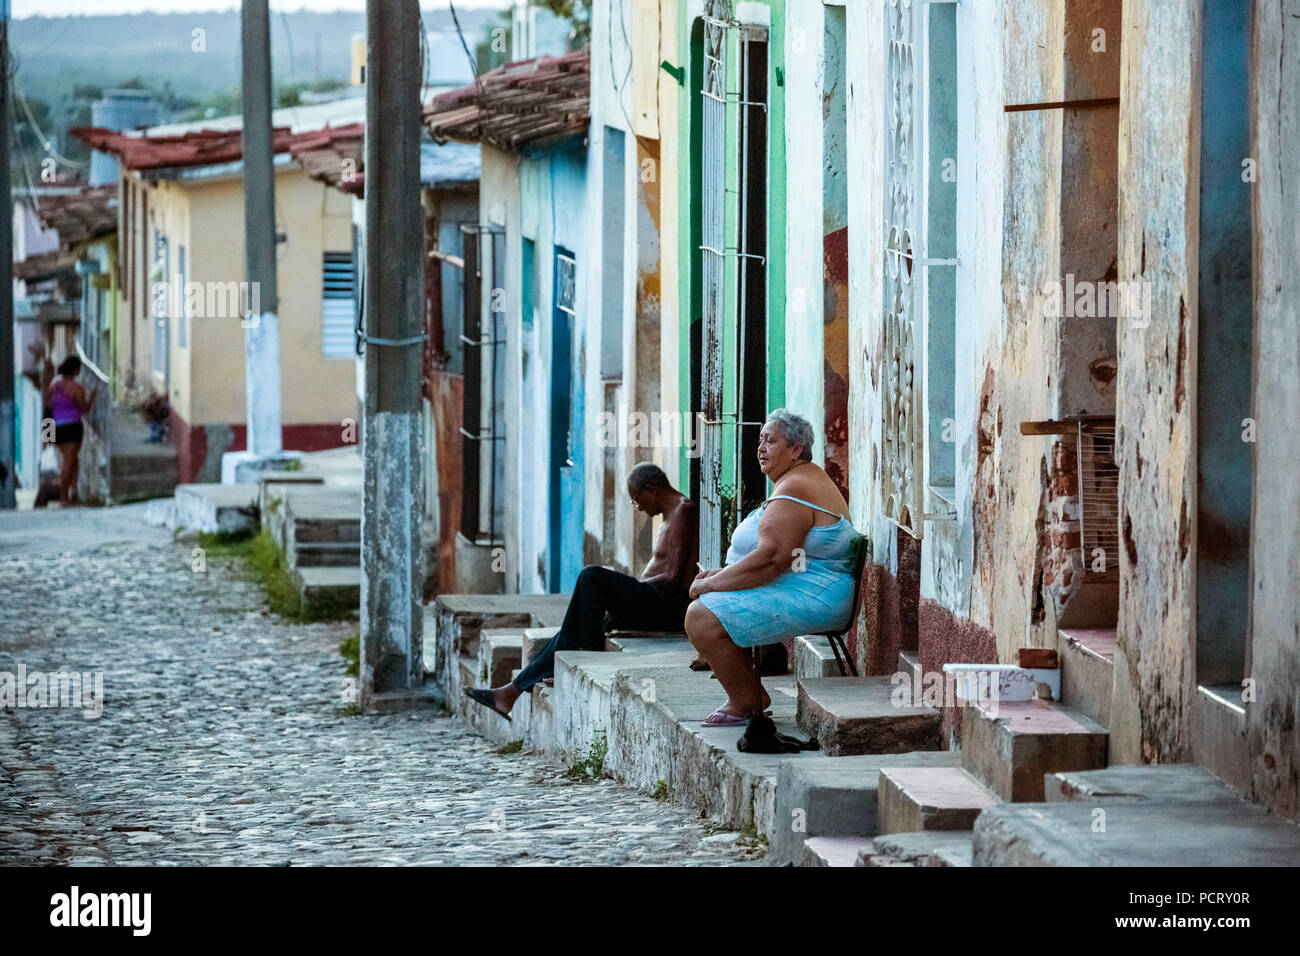 Los cubanos están sentados en sus pasos delante de sus casas en el centro histórico de la ciudad, escena callejera en el centro histórico de la ciudad de Trinidad, en Trinidad, Cuba, Sancti Spíritus, Cuba Foto de stock